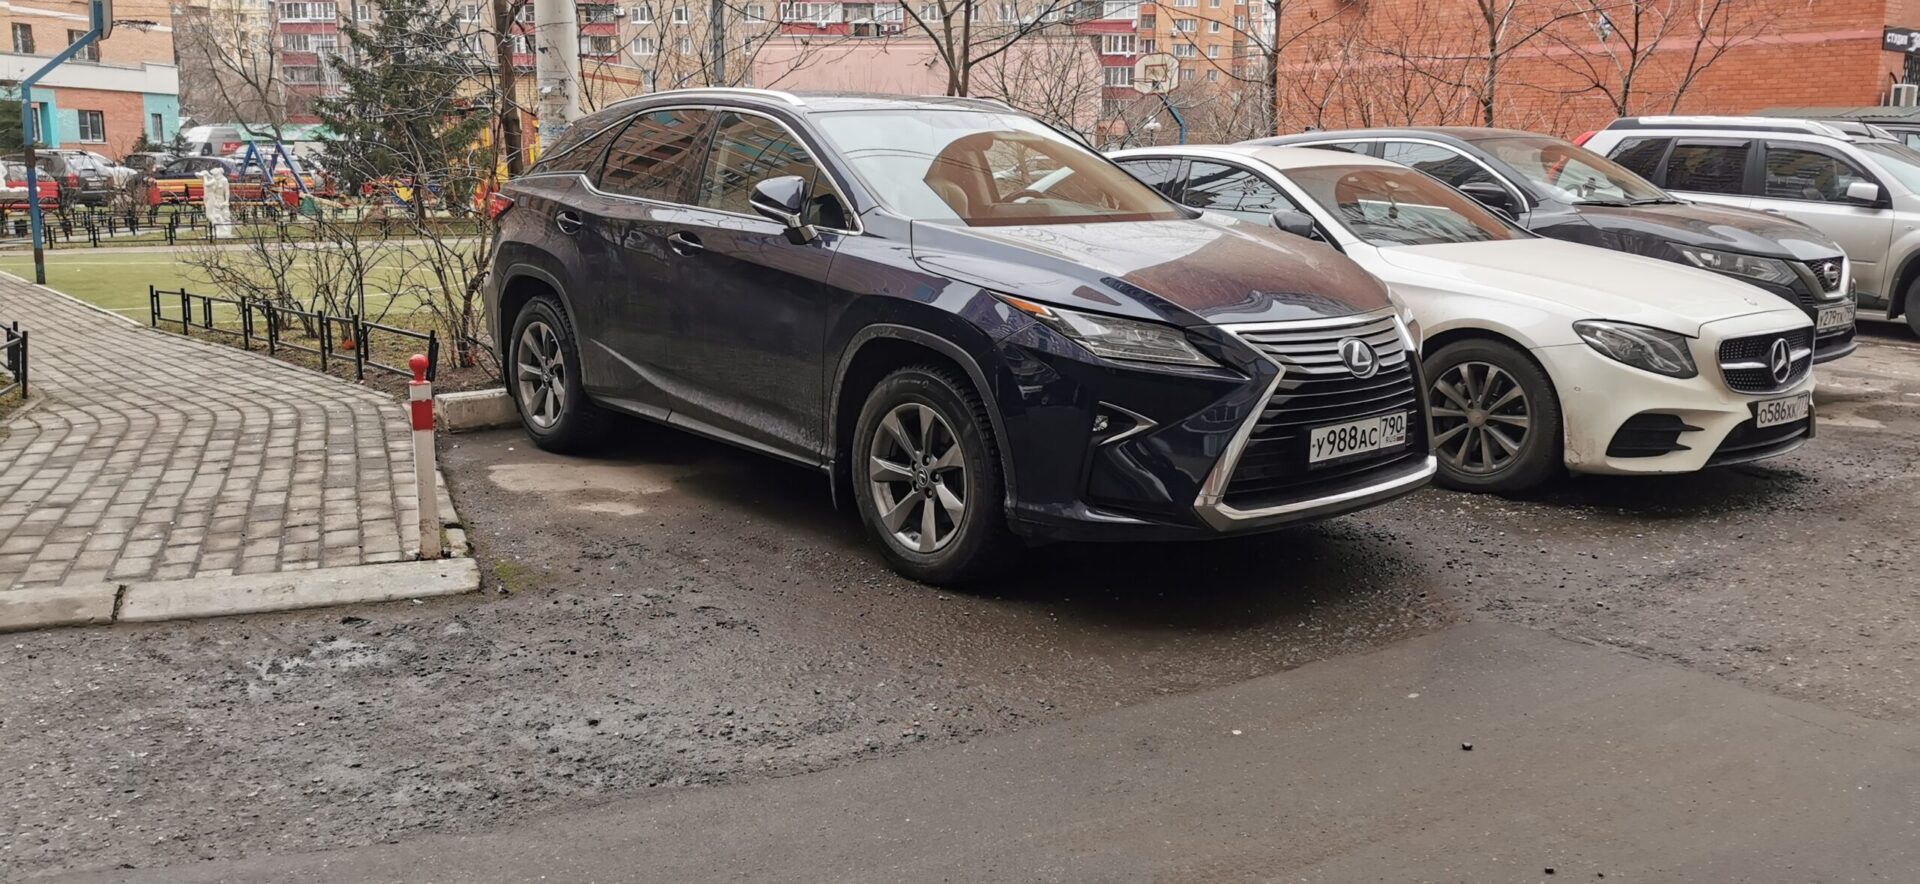 Кабмин не поддержал законопроект о повышении планки налога на роскошь на автомобили в РФ